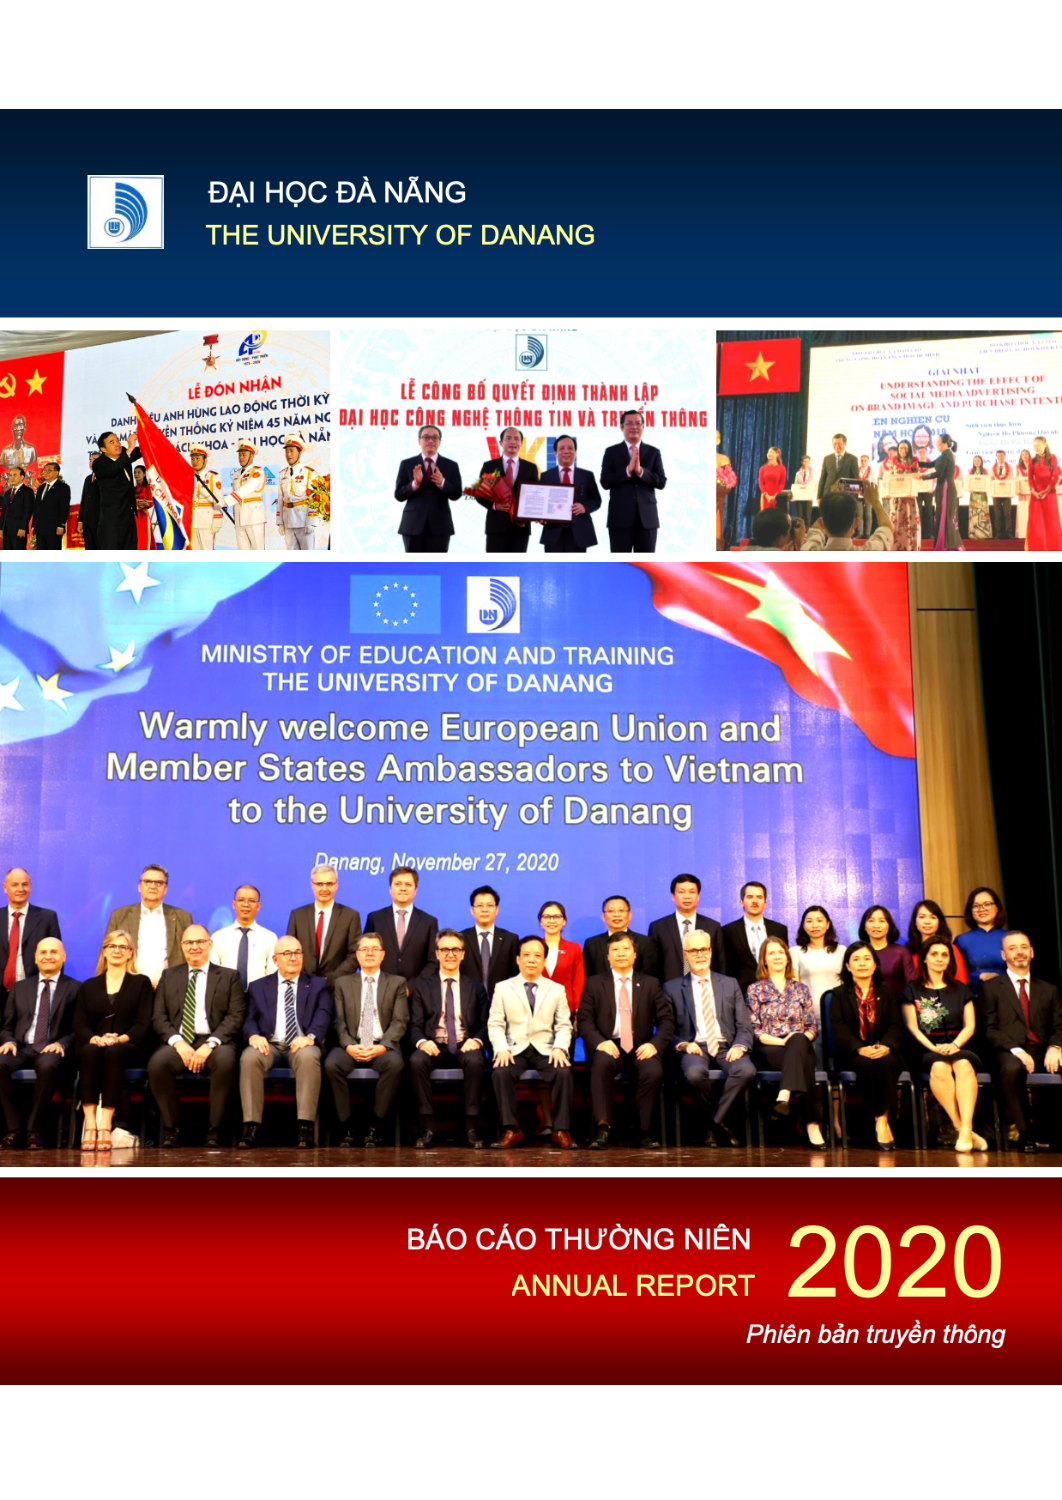 Đại học Đà Nẵng phát hành Báo cáo thường niên năm 2020 (phiên bản truyền thông, Annual Report UD-2020)